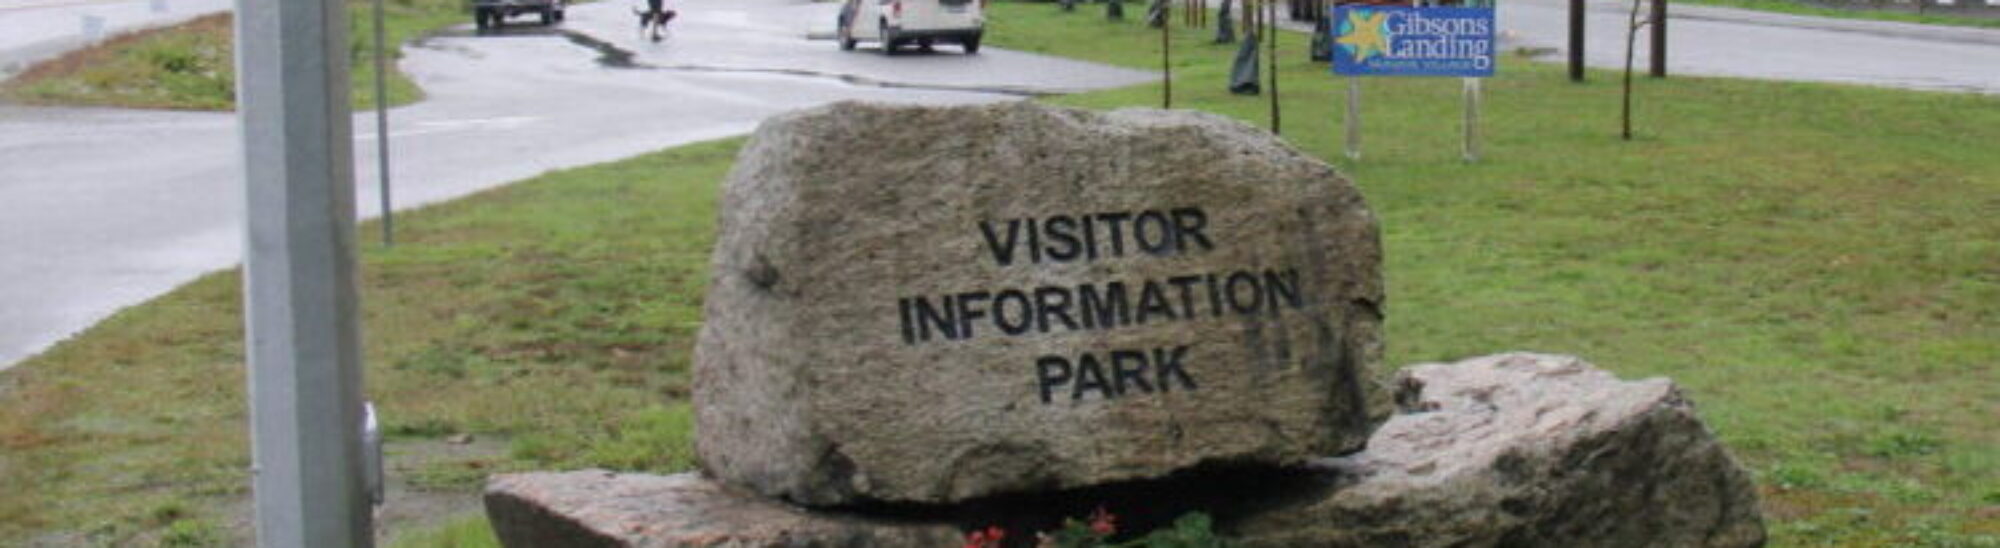 Visitor Information Park Entrance